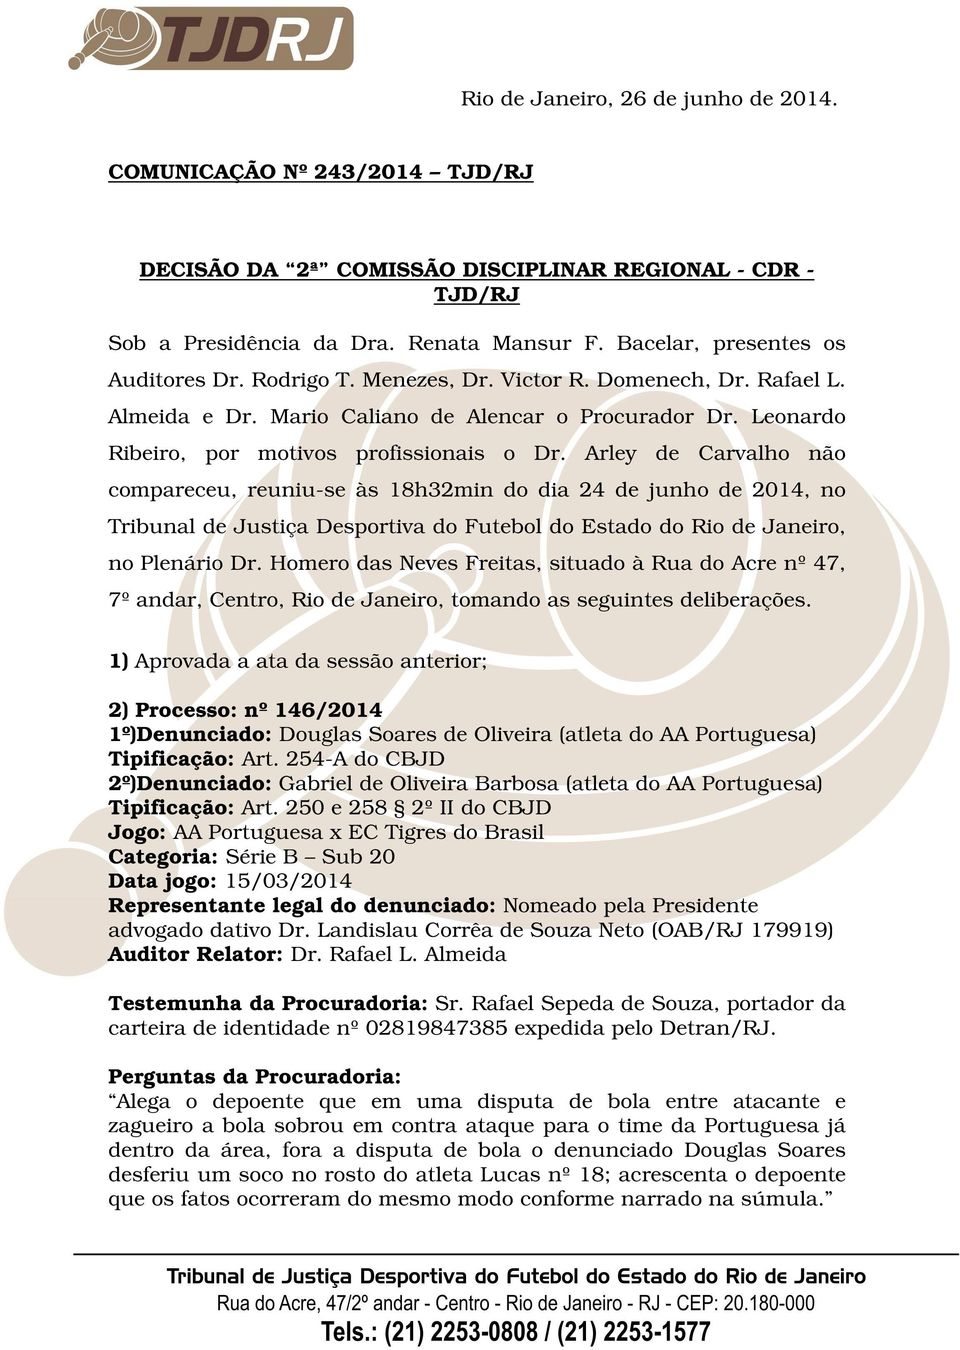 Arley de Carvalho não compareceu, reuniu-se às 18h32min do dia 24 de junho de 2014, no Tribunal de Justiça Desportiva do Futebol do Estado do Rio de Janeiro, no Plenário Dr.